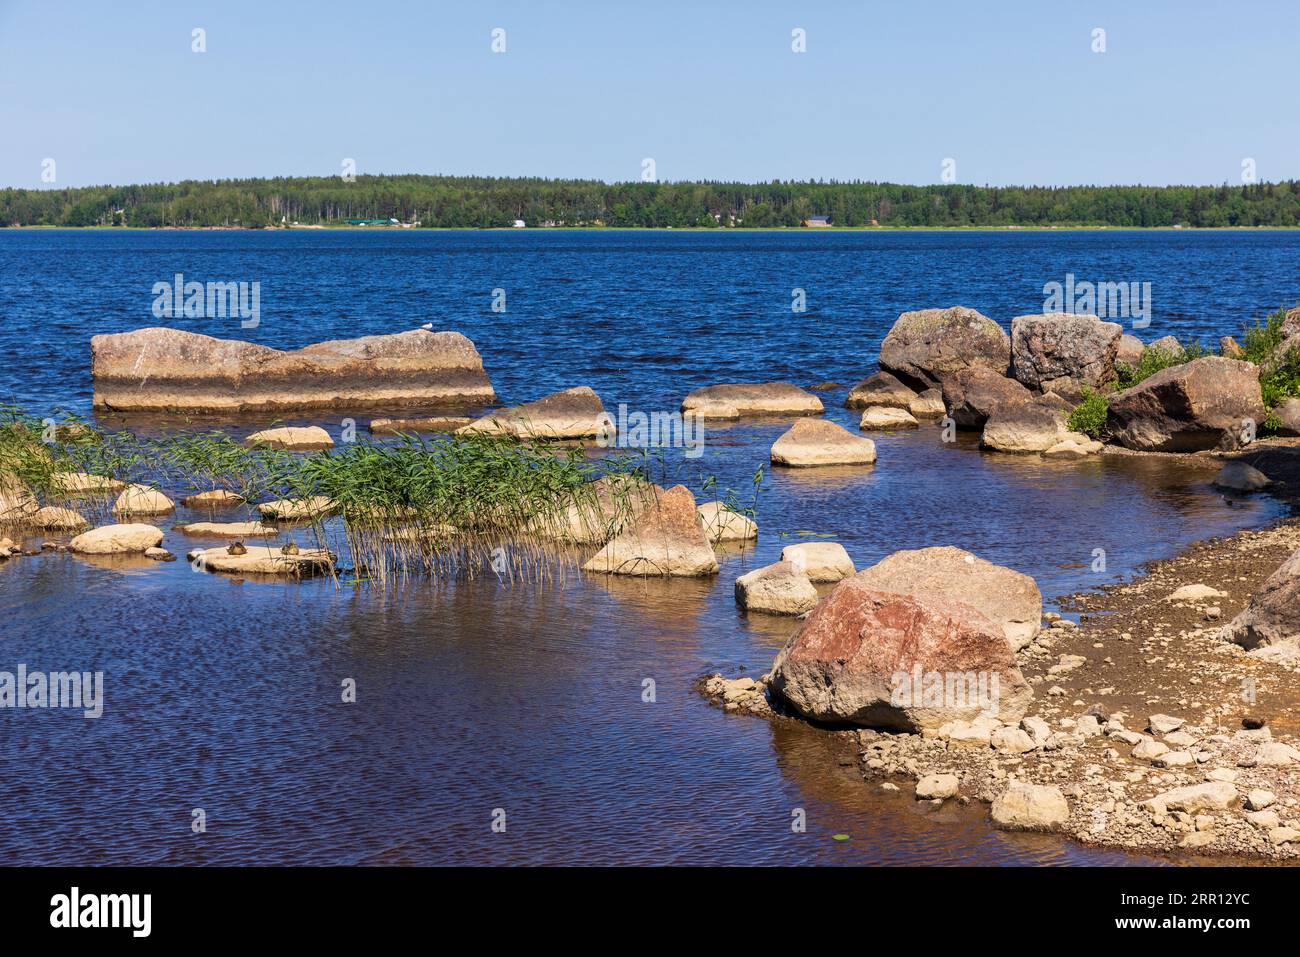 Le nevi di granito si trovano sulla costa di un lago. Parco Monrepos foto di paesaggio estivo scattata in una giornata di sole Foto Stock